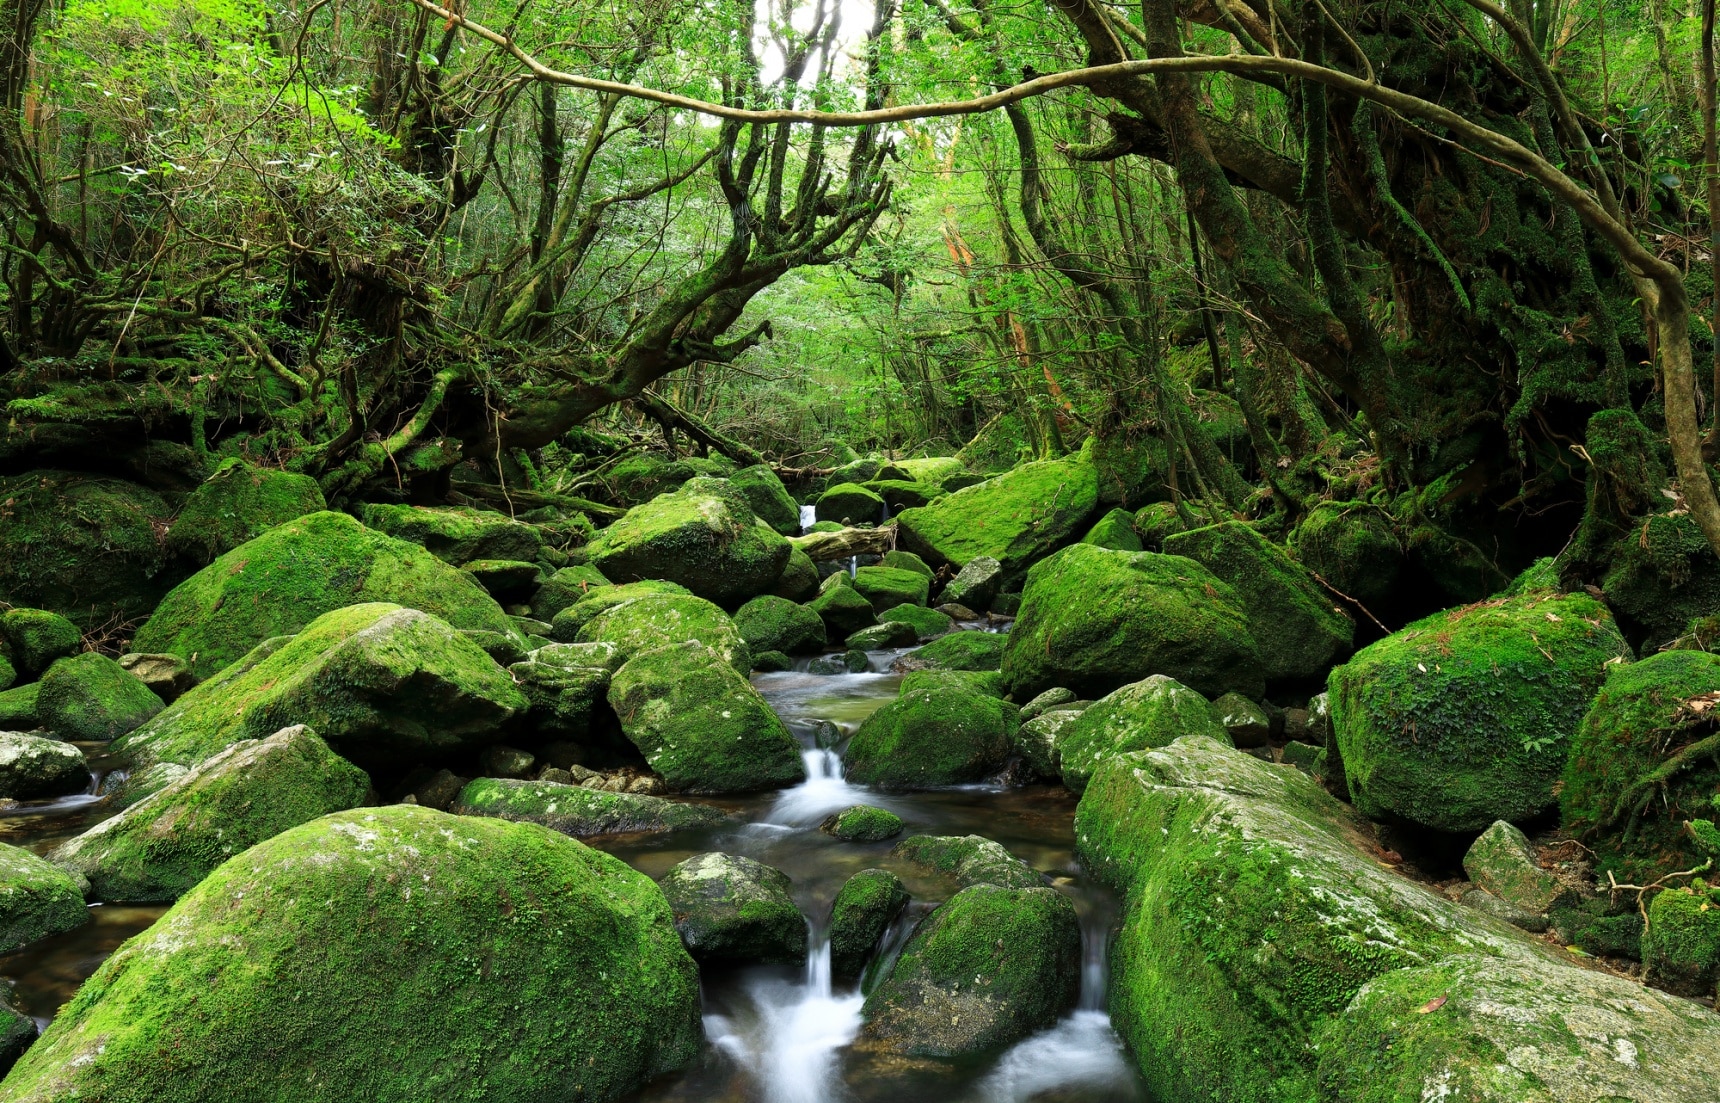 鹿兒島自由行 屏住呼吸 到原始森林秘境 屋久島 擁抱自然享受最美的感動 All About Japan